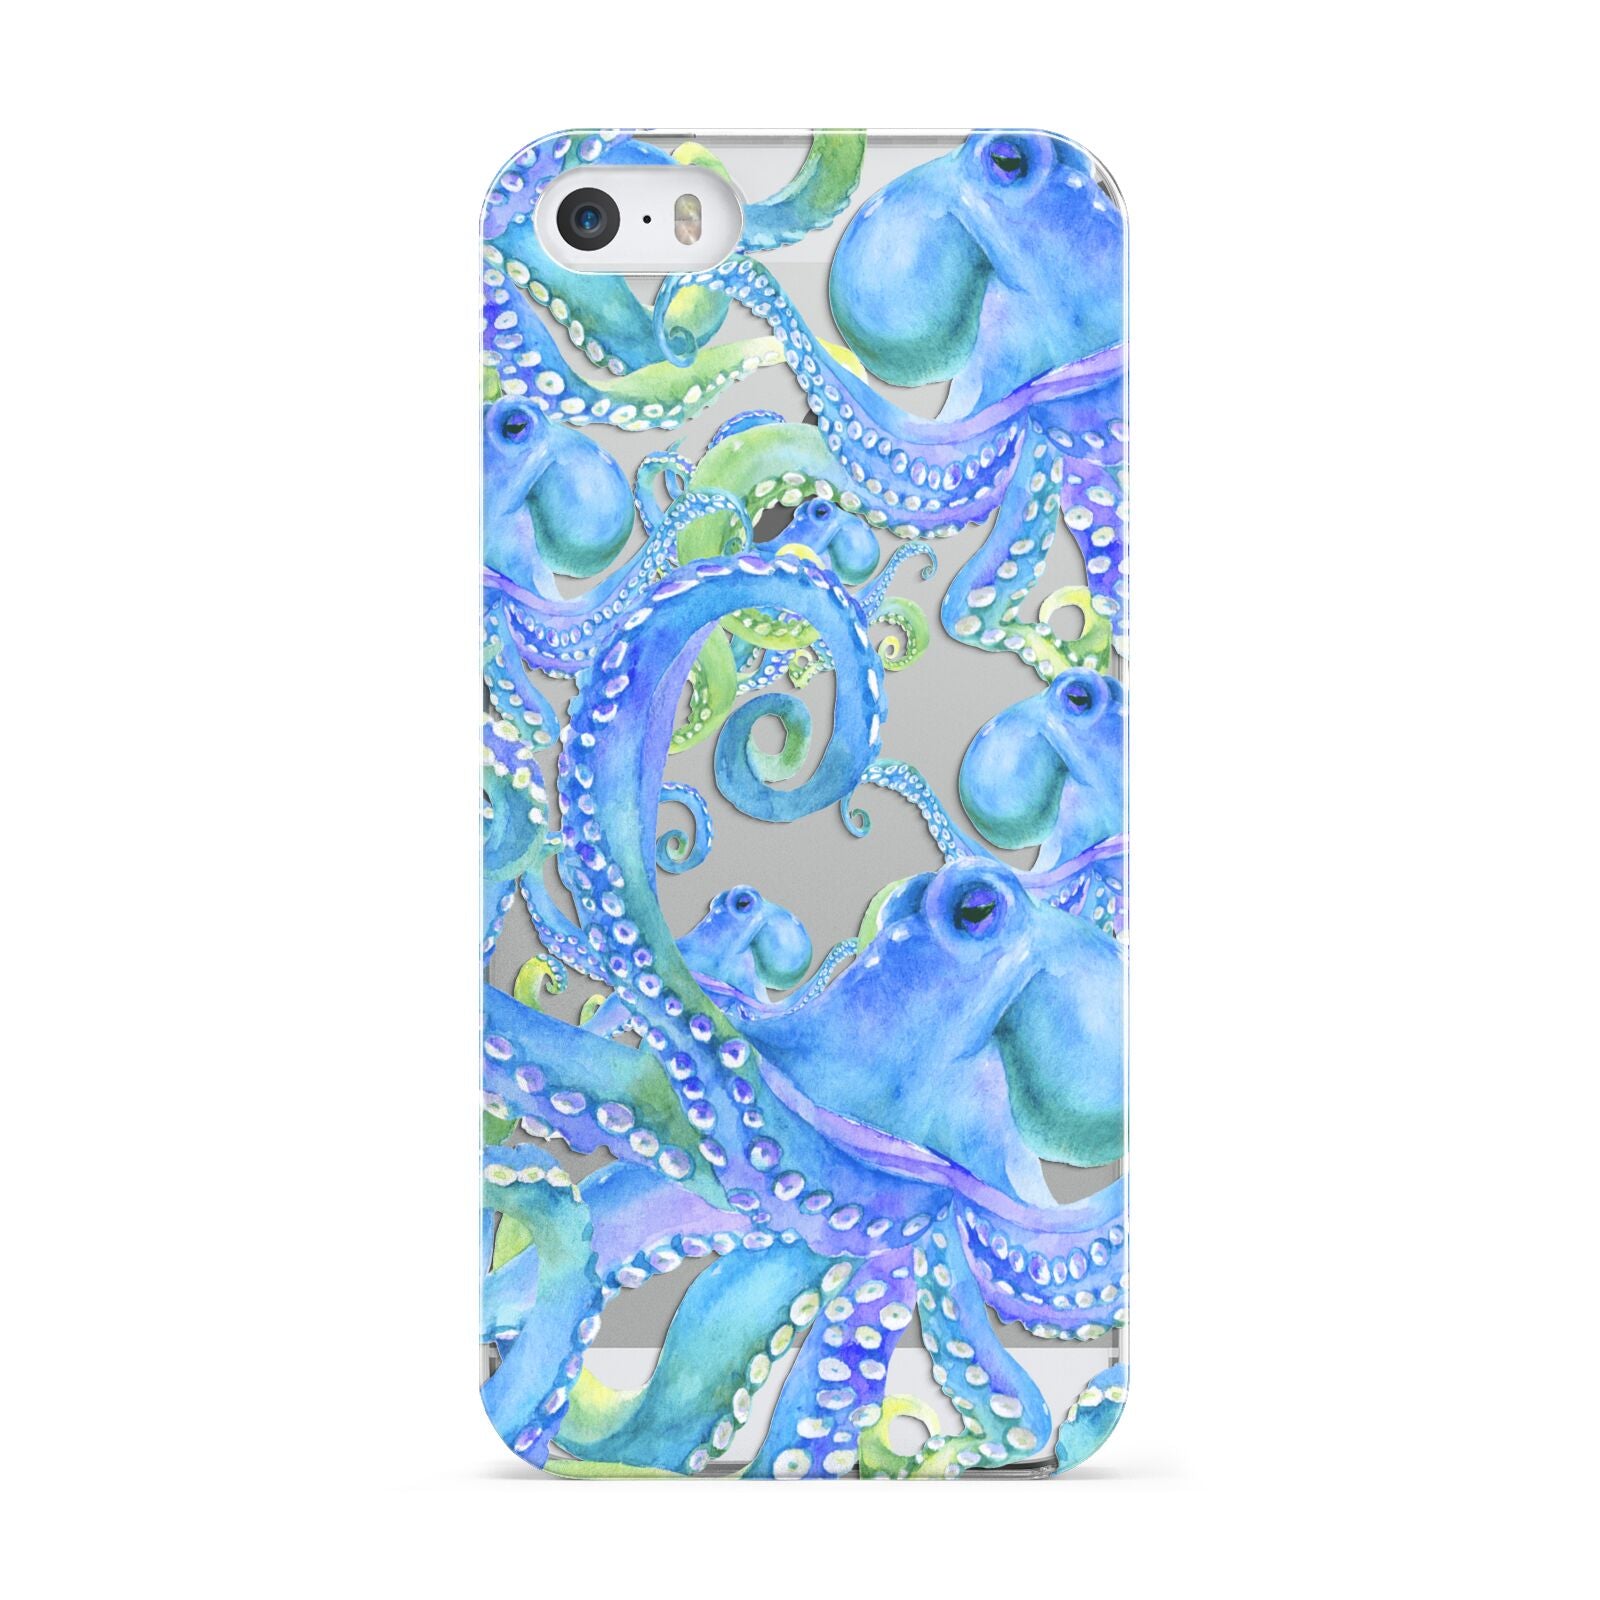 Octopus Apple iPhone 5 Case